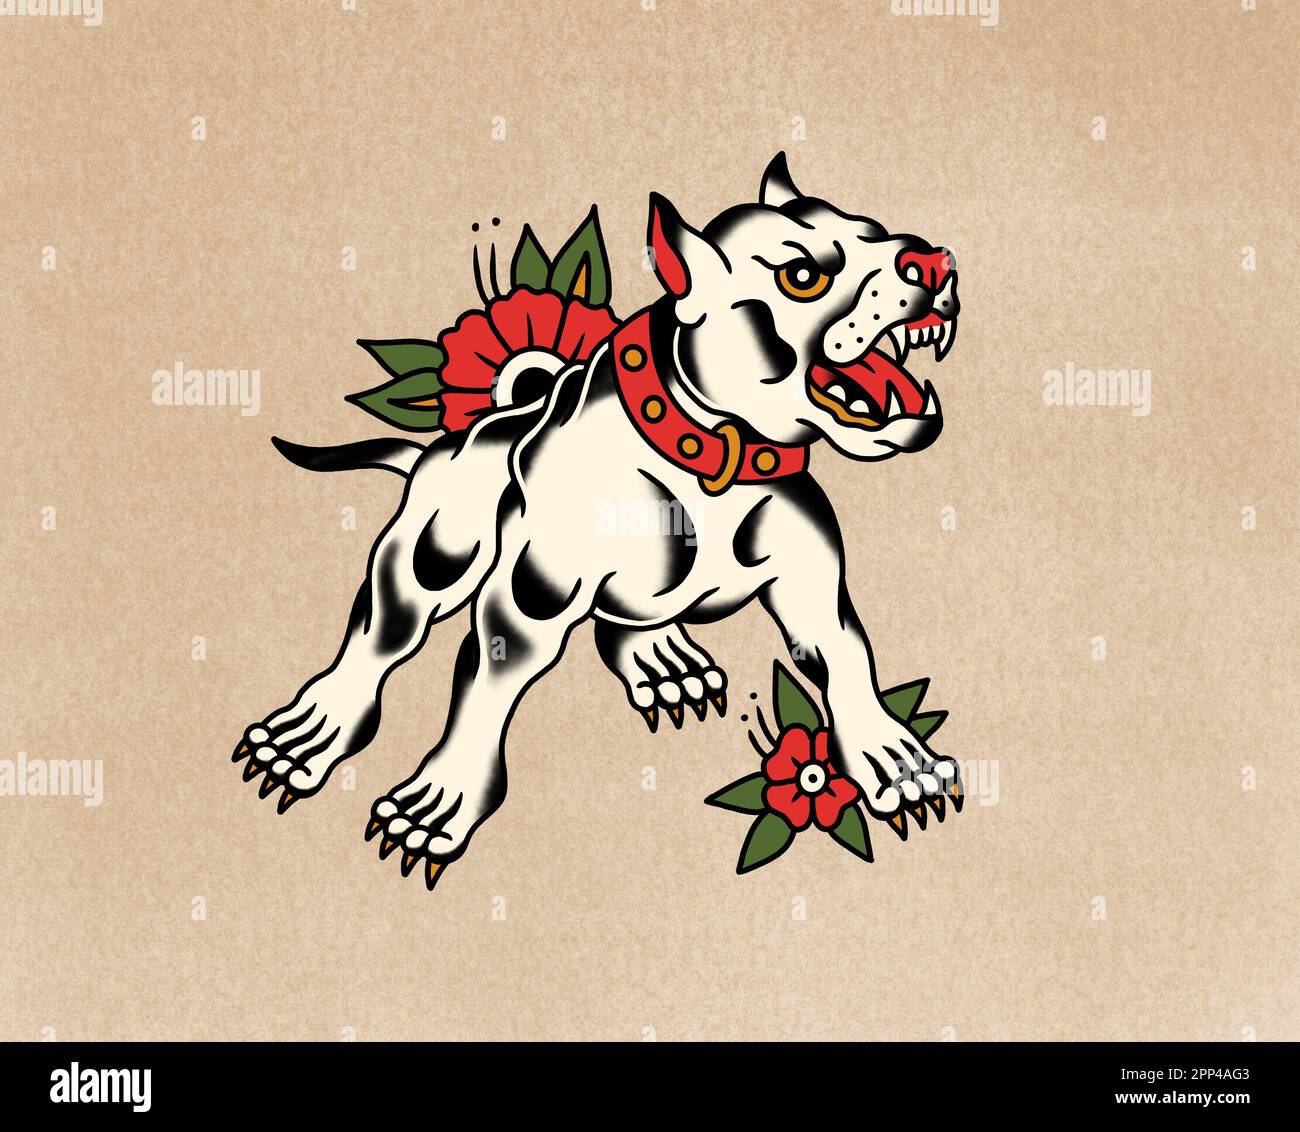 Vecchio stile tatuaggio scuola arte disegno cane vizioso con fiori su sfondo di carta vecchia Foto Stock